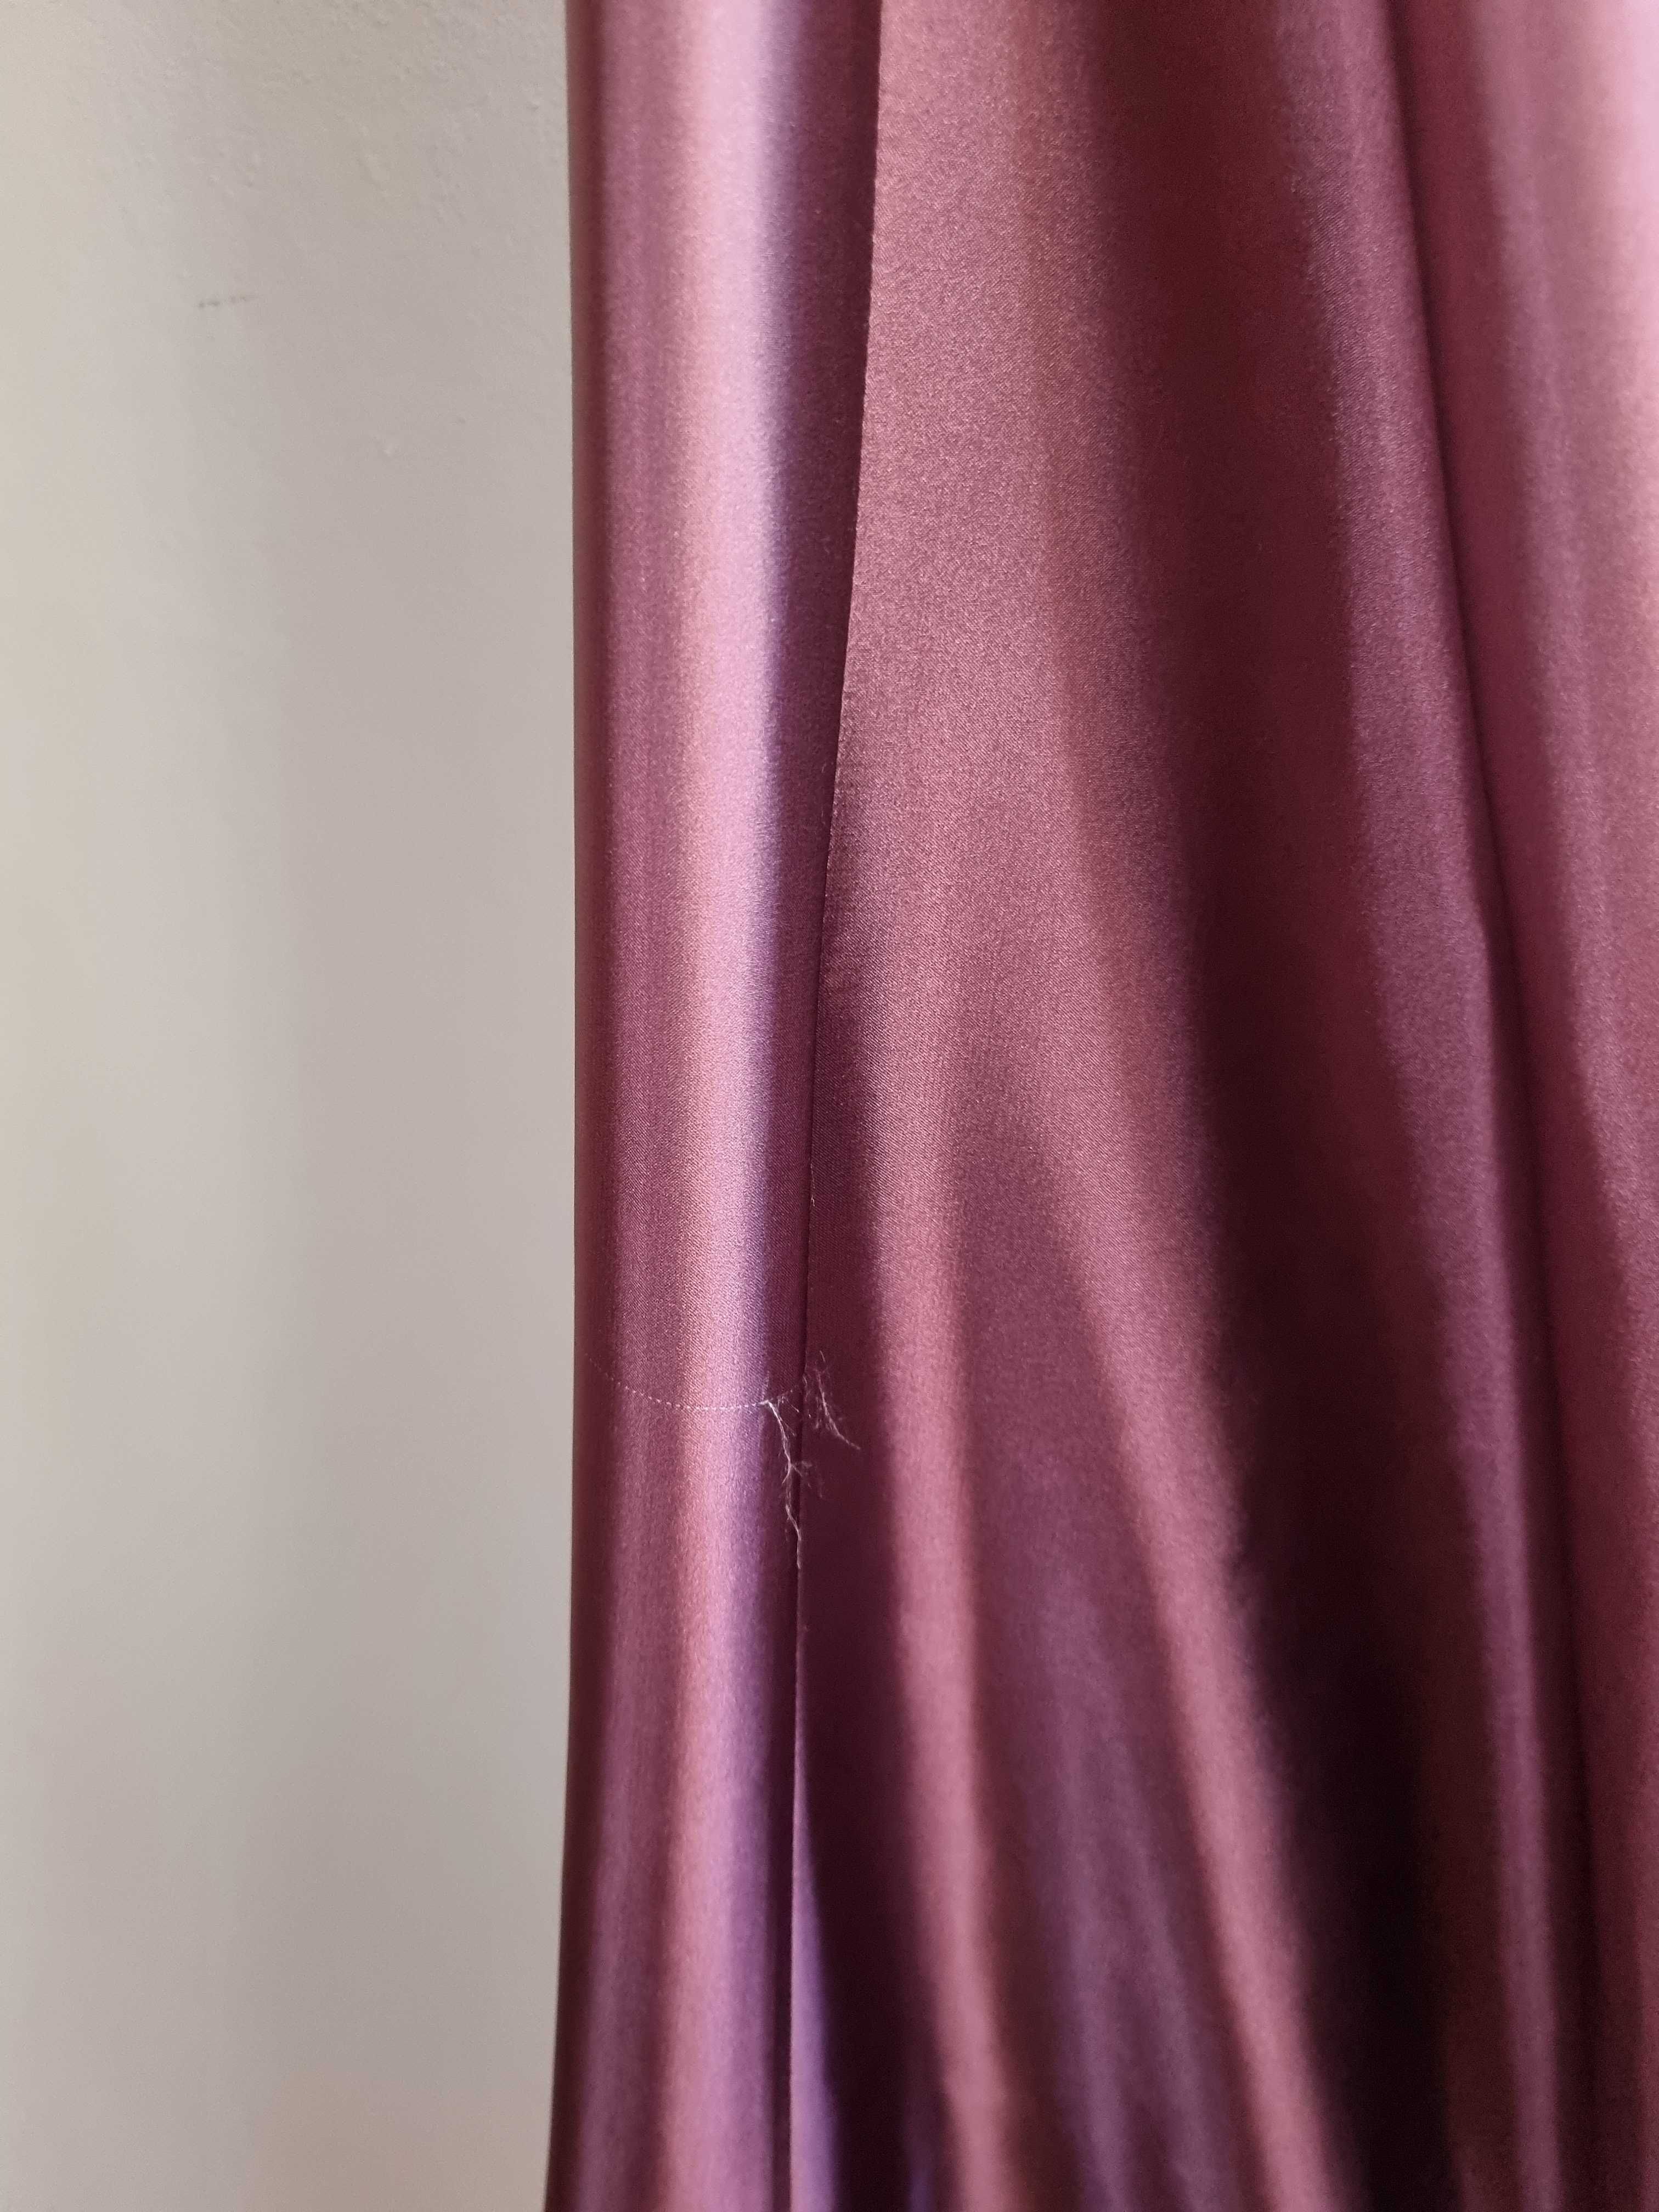 Dluga sukienka wieczorowa ombre, różowa, rozmiar 40, idealna na wesele